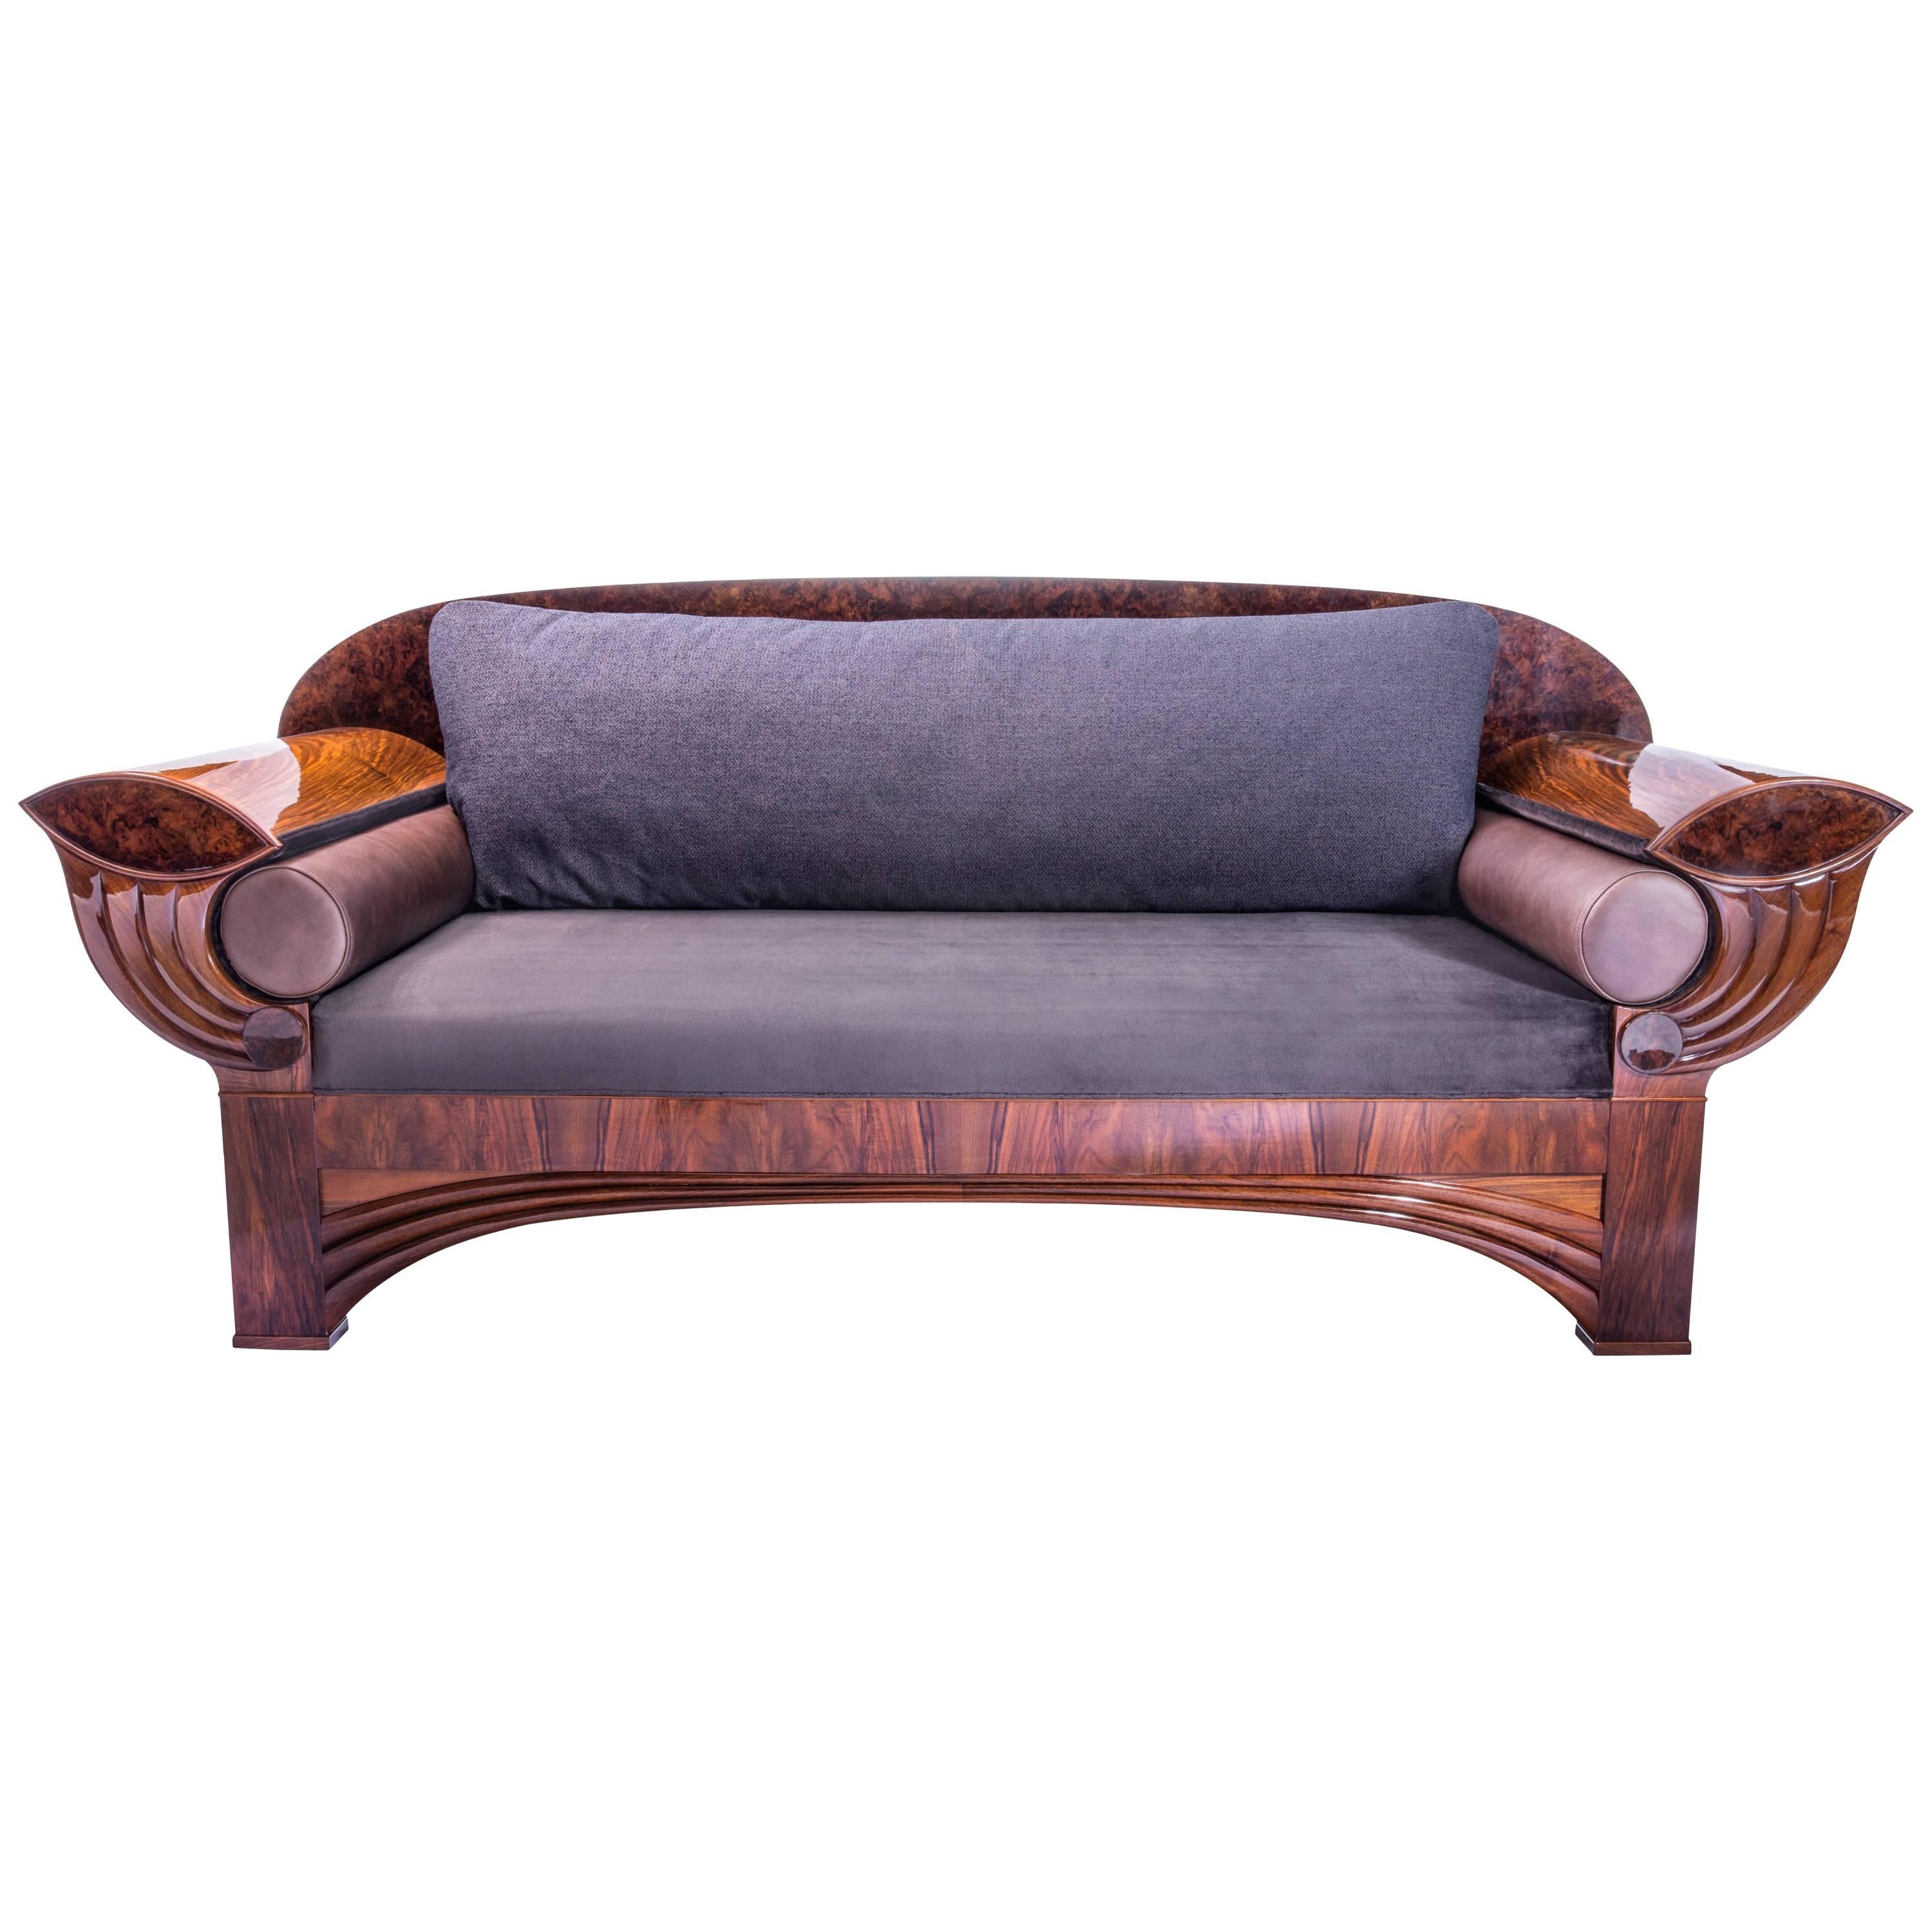 Kongo Sofa, Contemporary Art Deco Influence by Gausbauer Austria For Sale